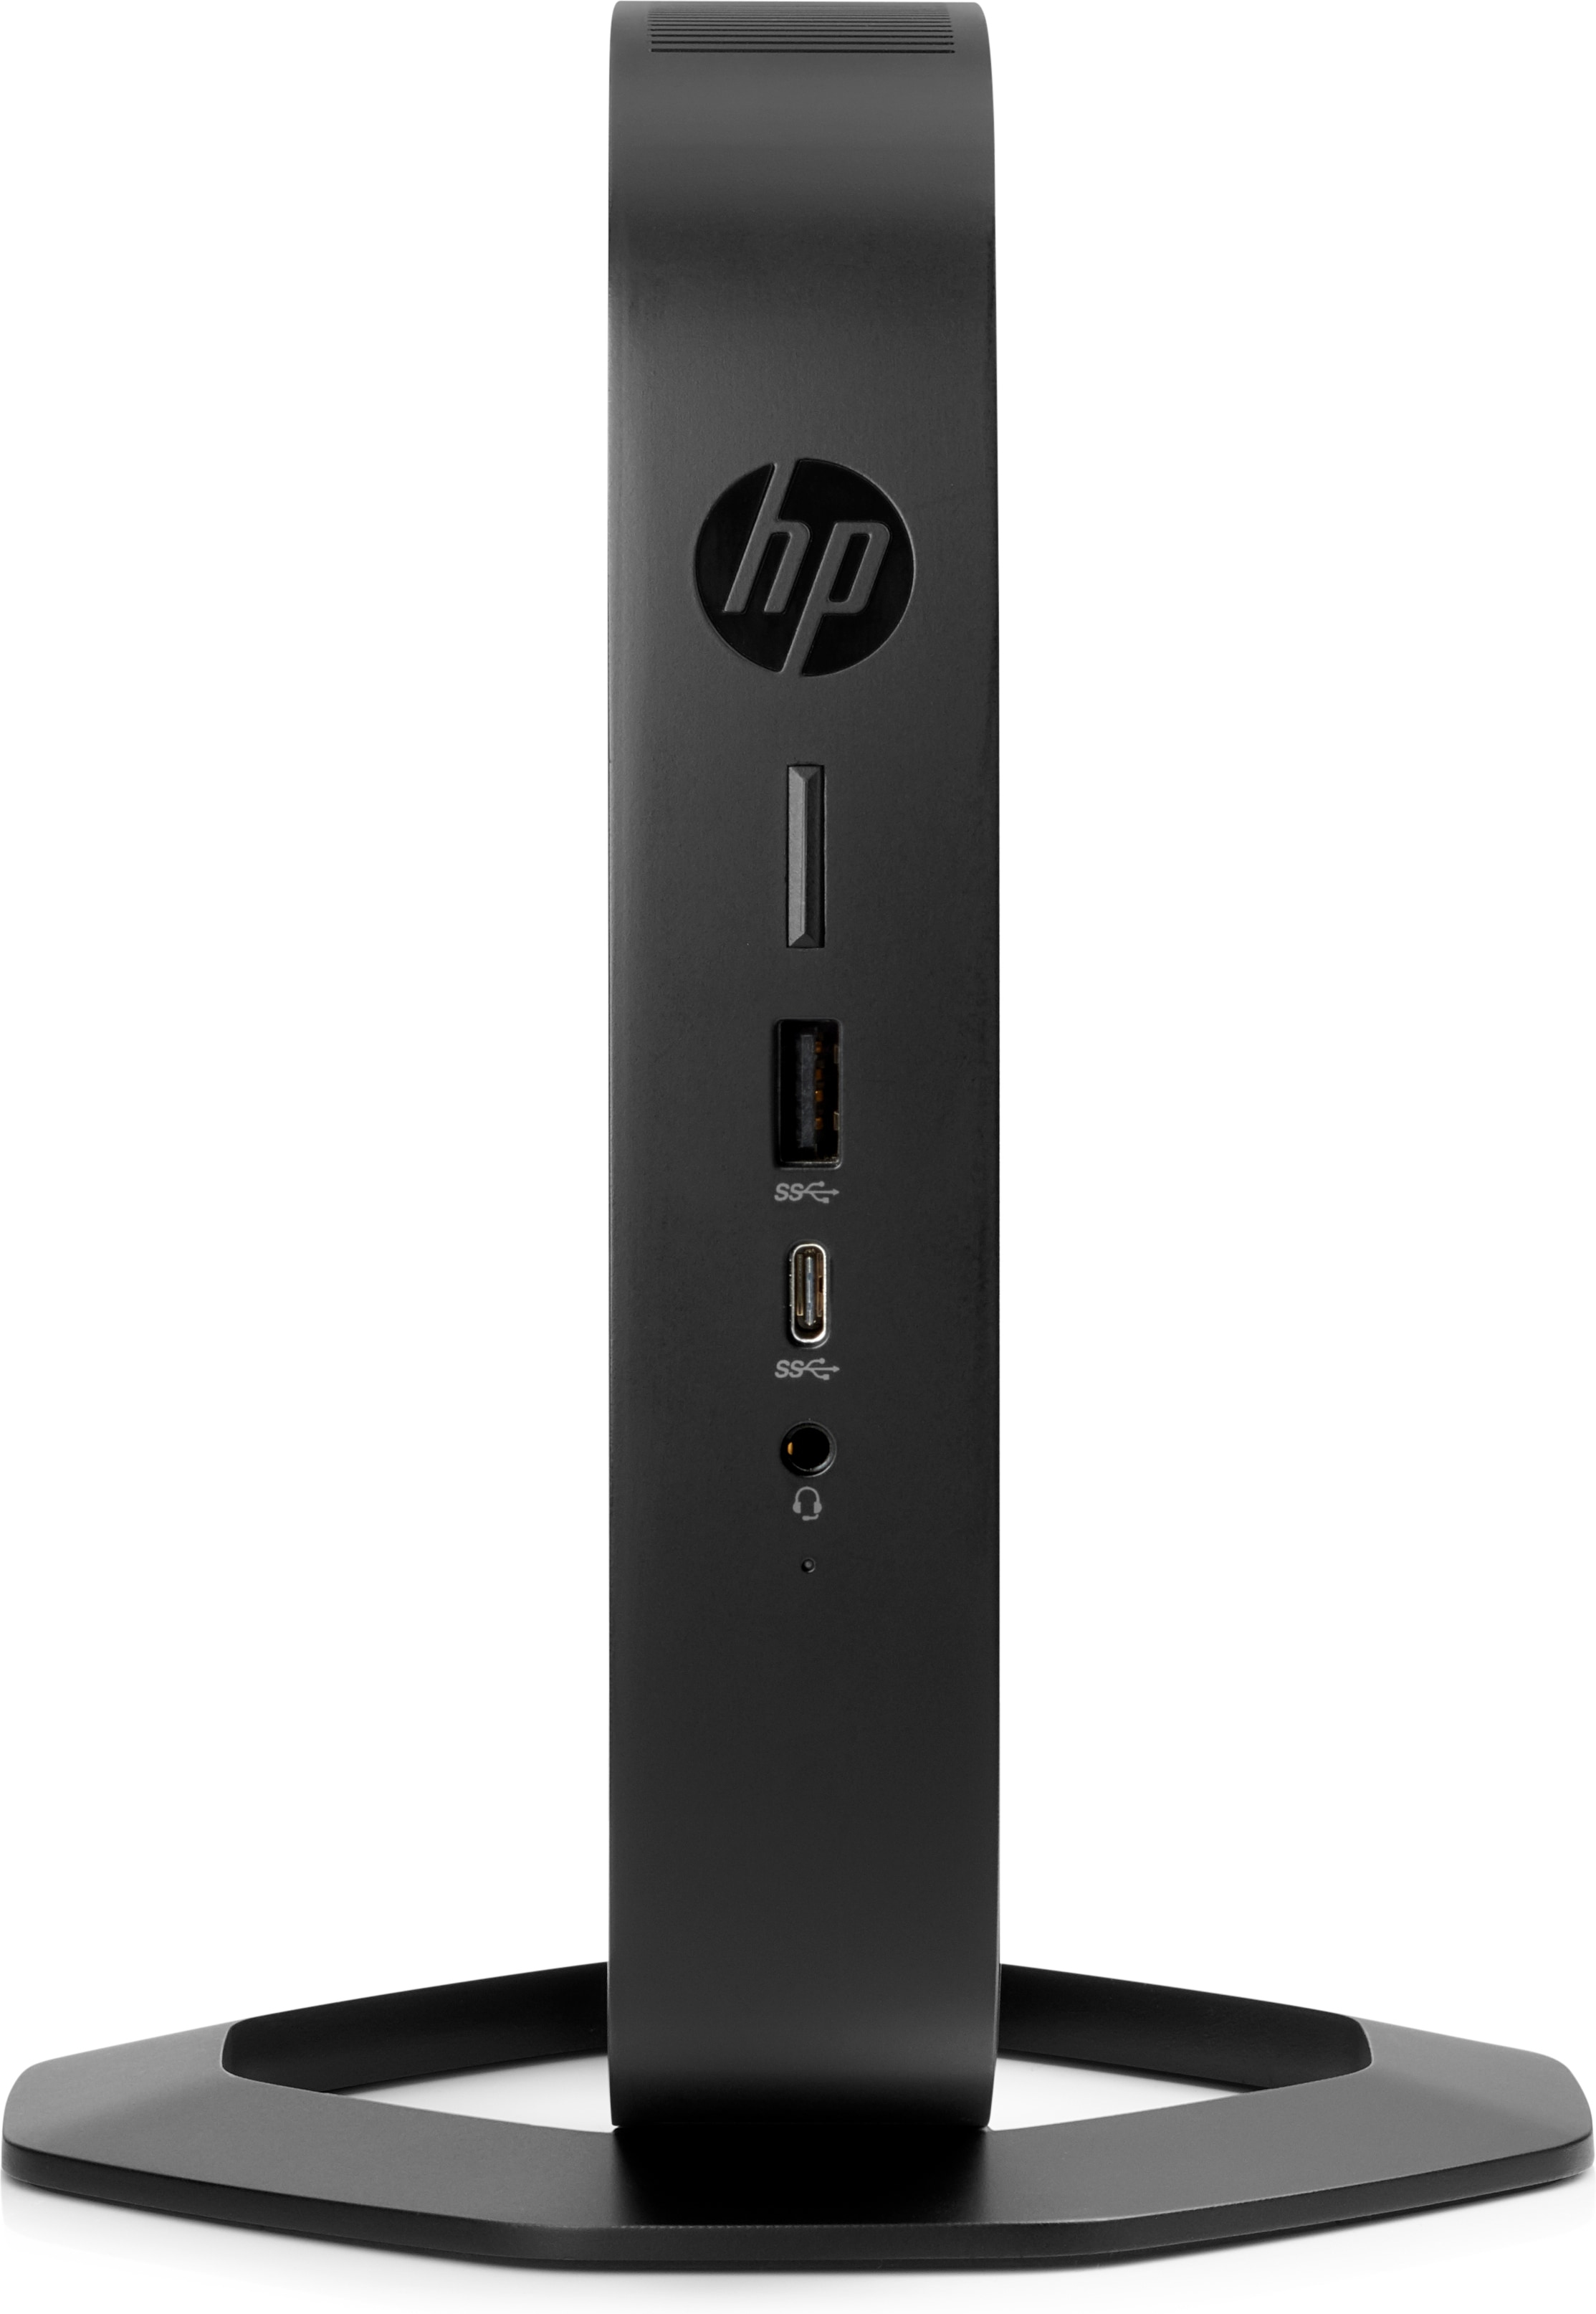 HP t540 - Thin client - USFF - 1 x Ryzen Embedded R1305G / 1.5 GHz - RAM 4 GB - flash - eMMC 16 GB - Radeon Vega 3 - GigE - WLAN: Bluetooth 5.0, 802.11a/b/g/n/ac/ax - HP ThinPro - monitor: none - keyboard: US